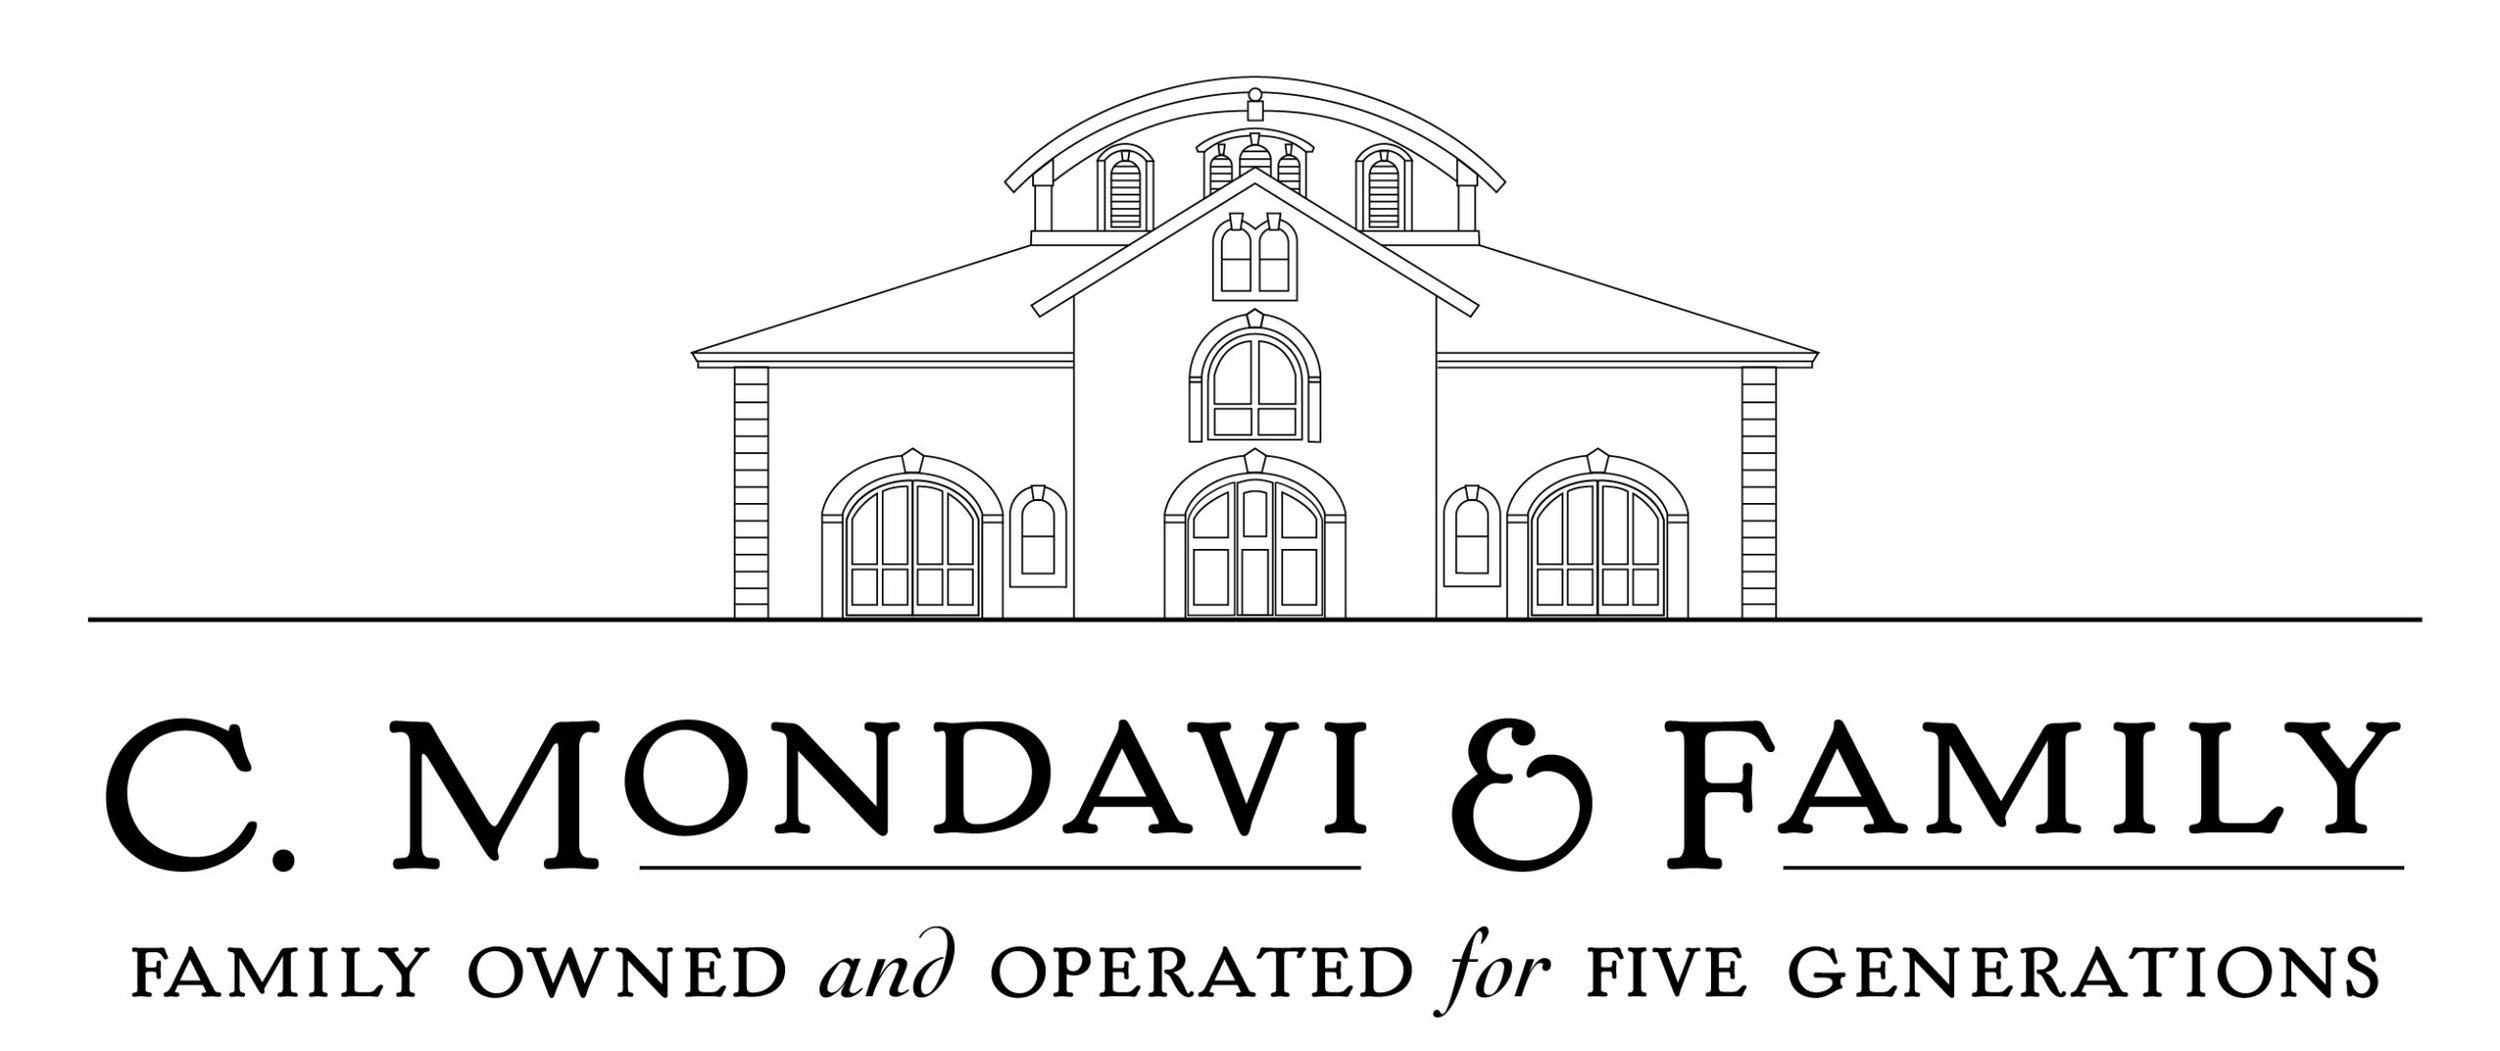 C. Mondavi & Family logo.jpeg